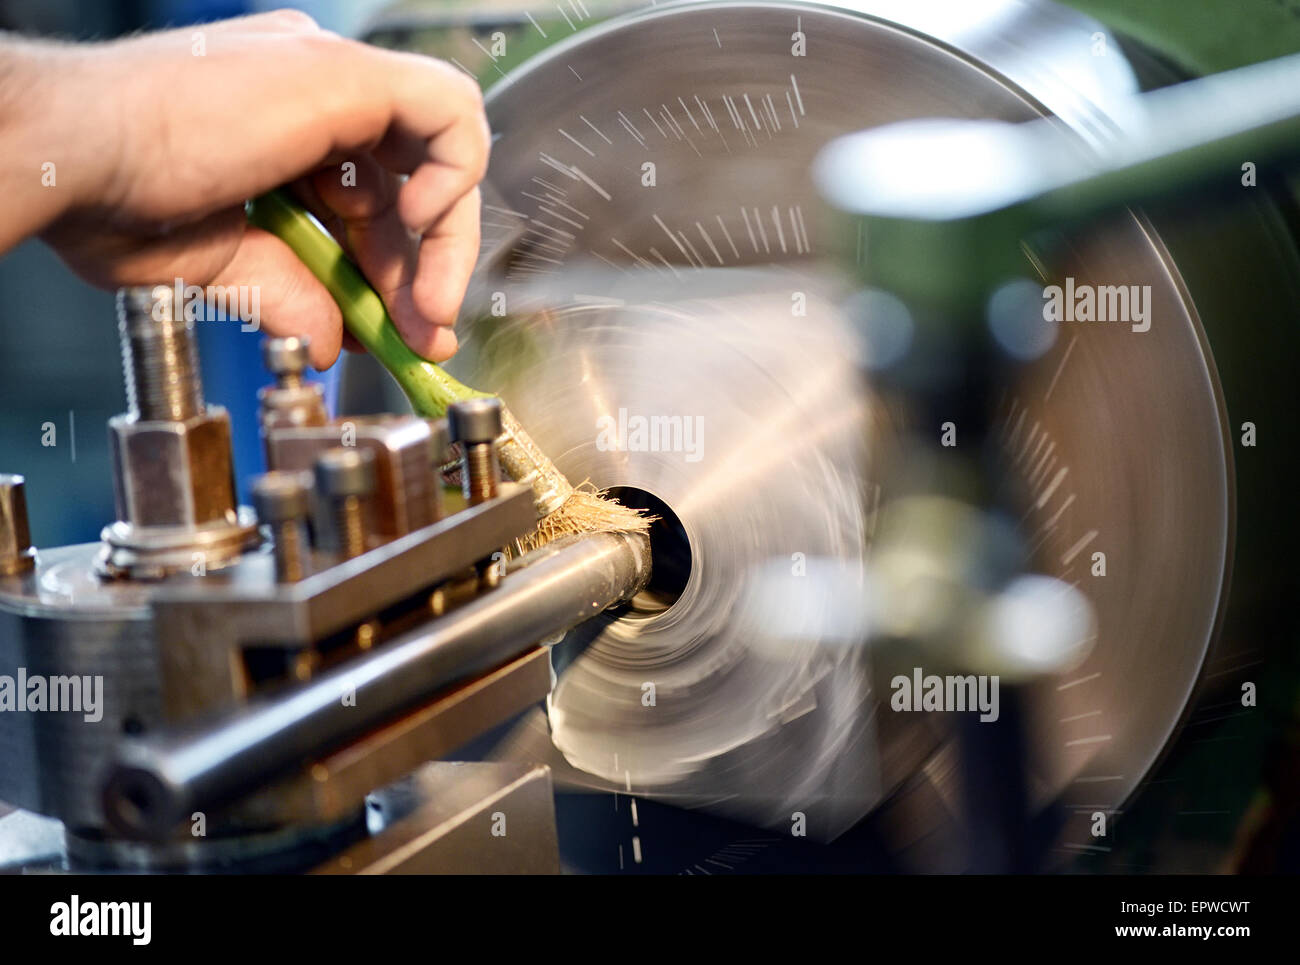 El hombre colocando aceite lubricante en un torno en un taller industrial o de ingeniería Foto de stock